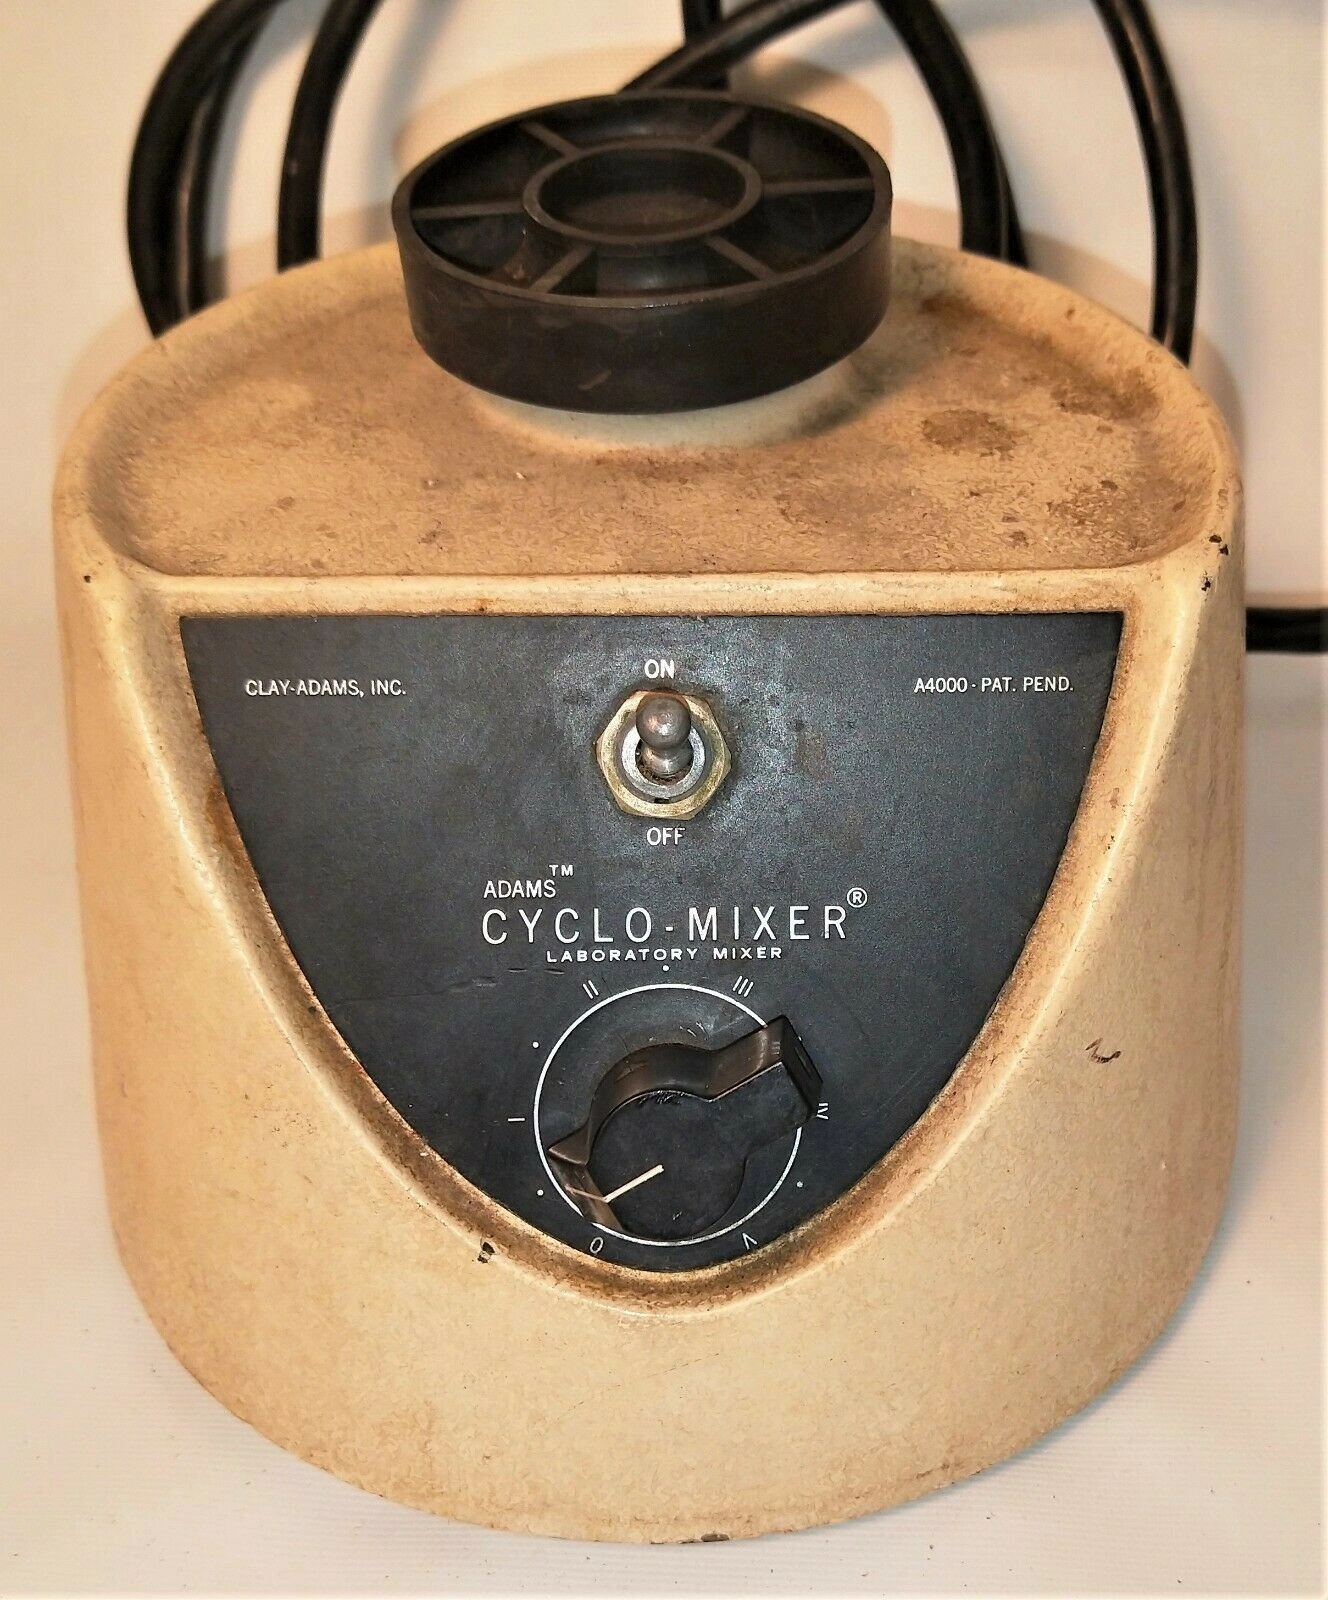 Clay Adams Cyclo-Mixer A4000 Vortex Mixer